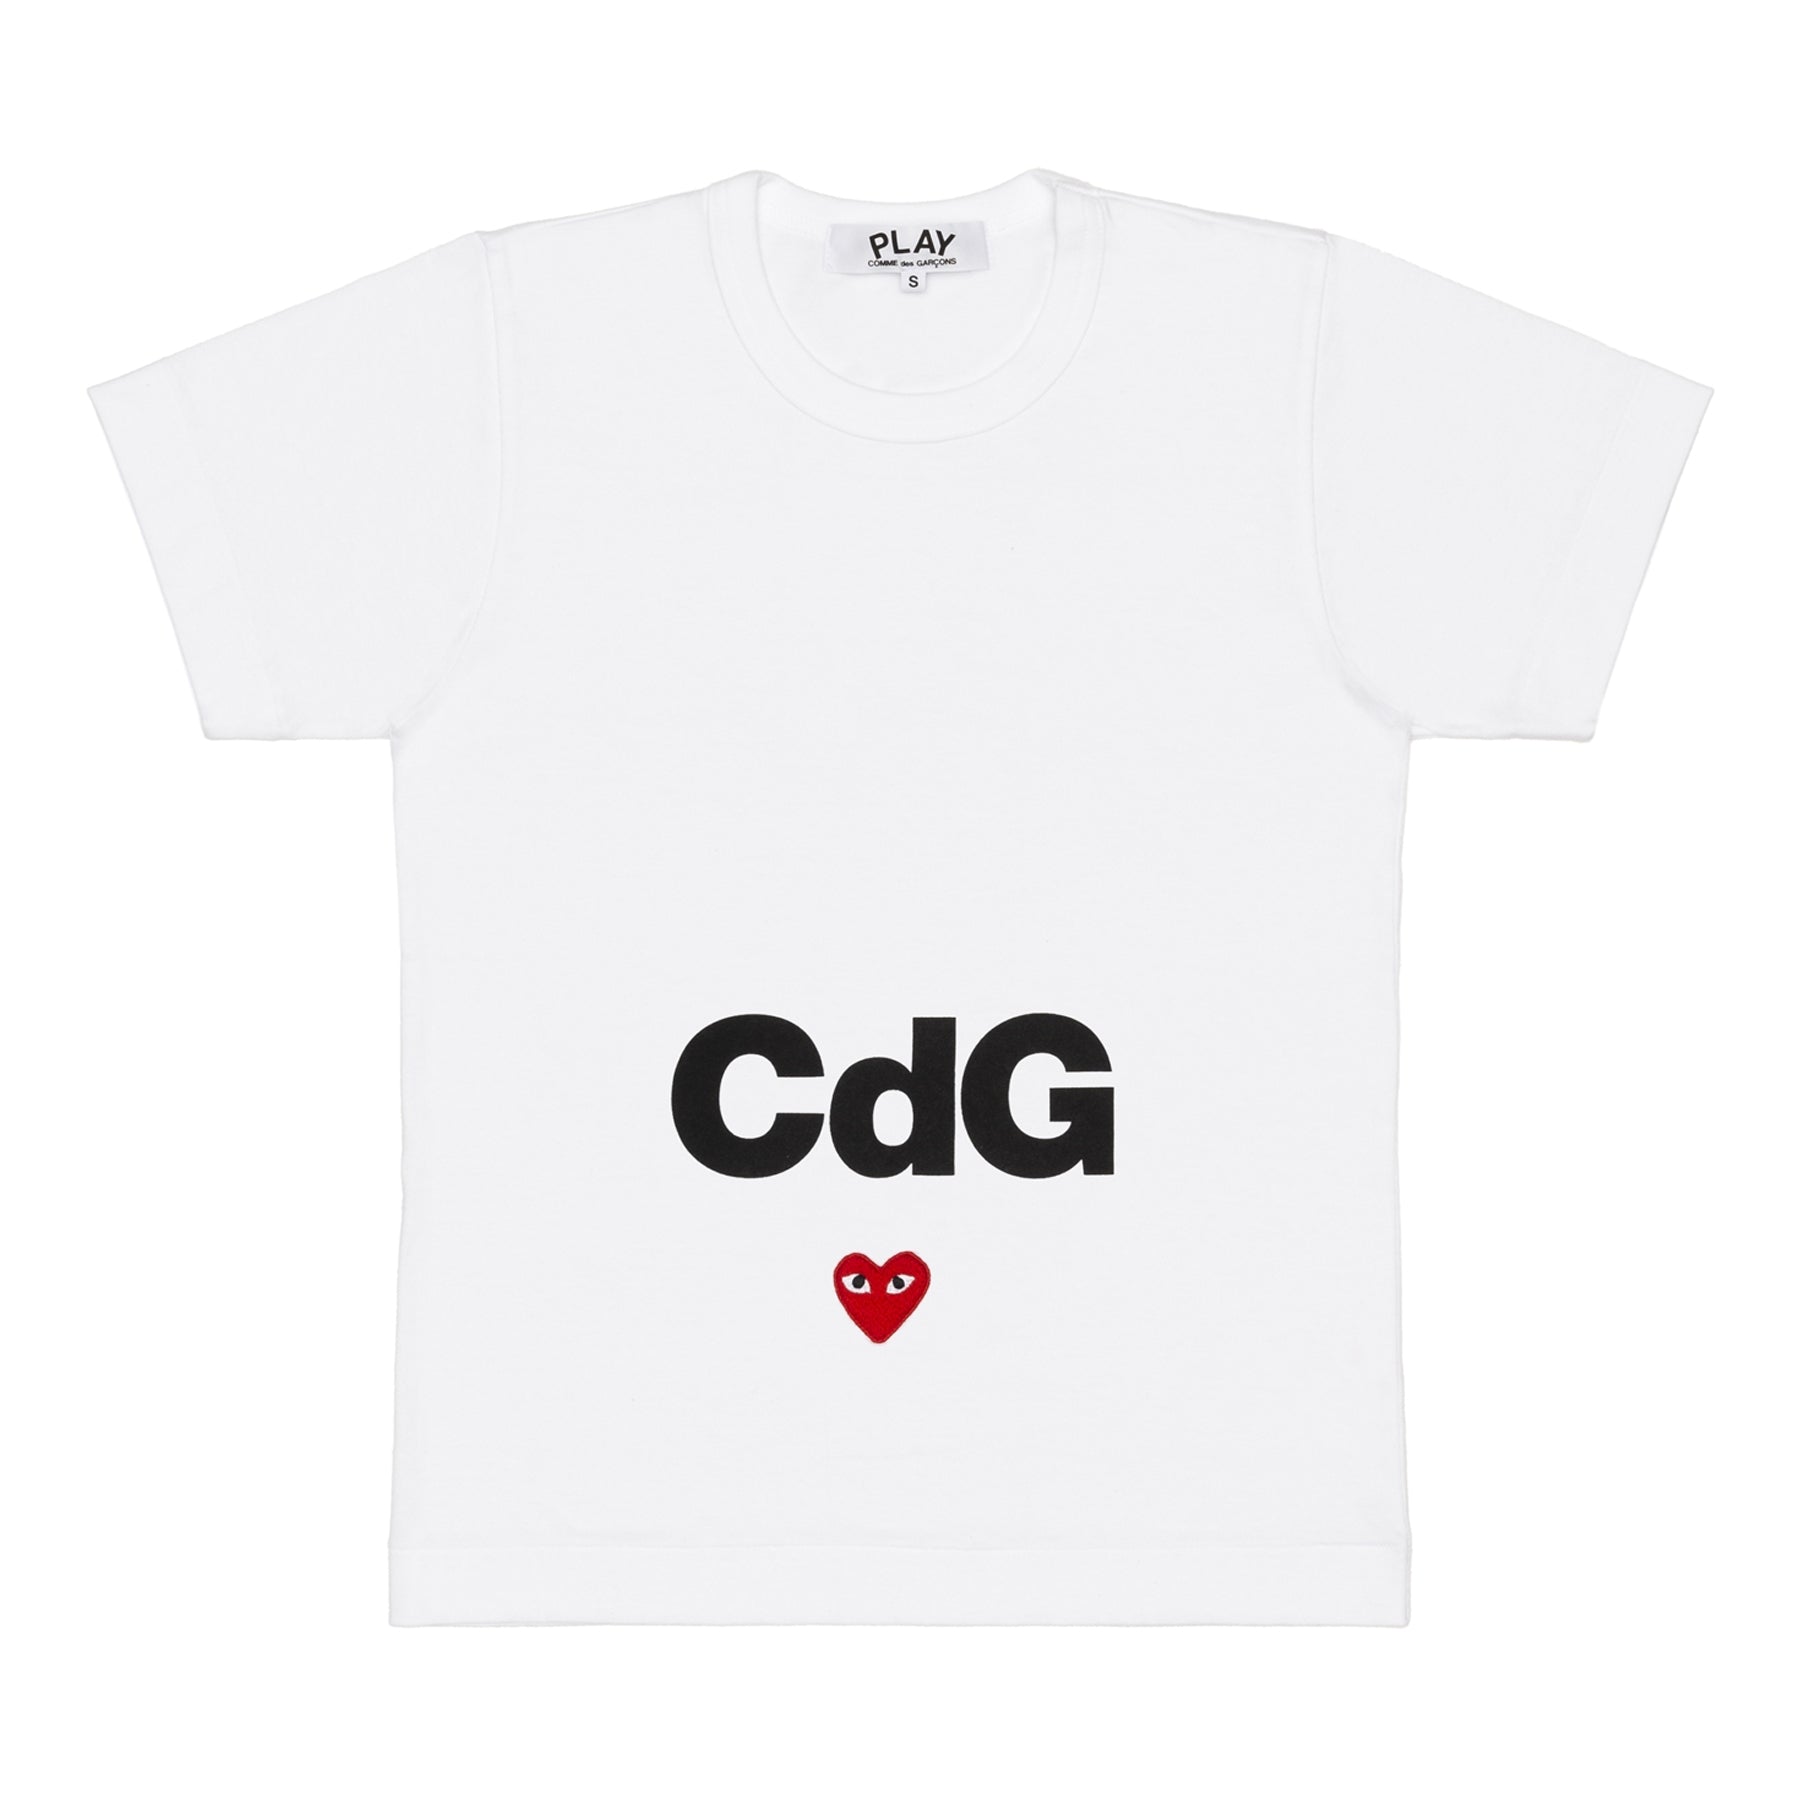 CDG PLAY - Cdg X Play T-Shirt - (White)